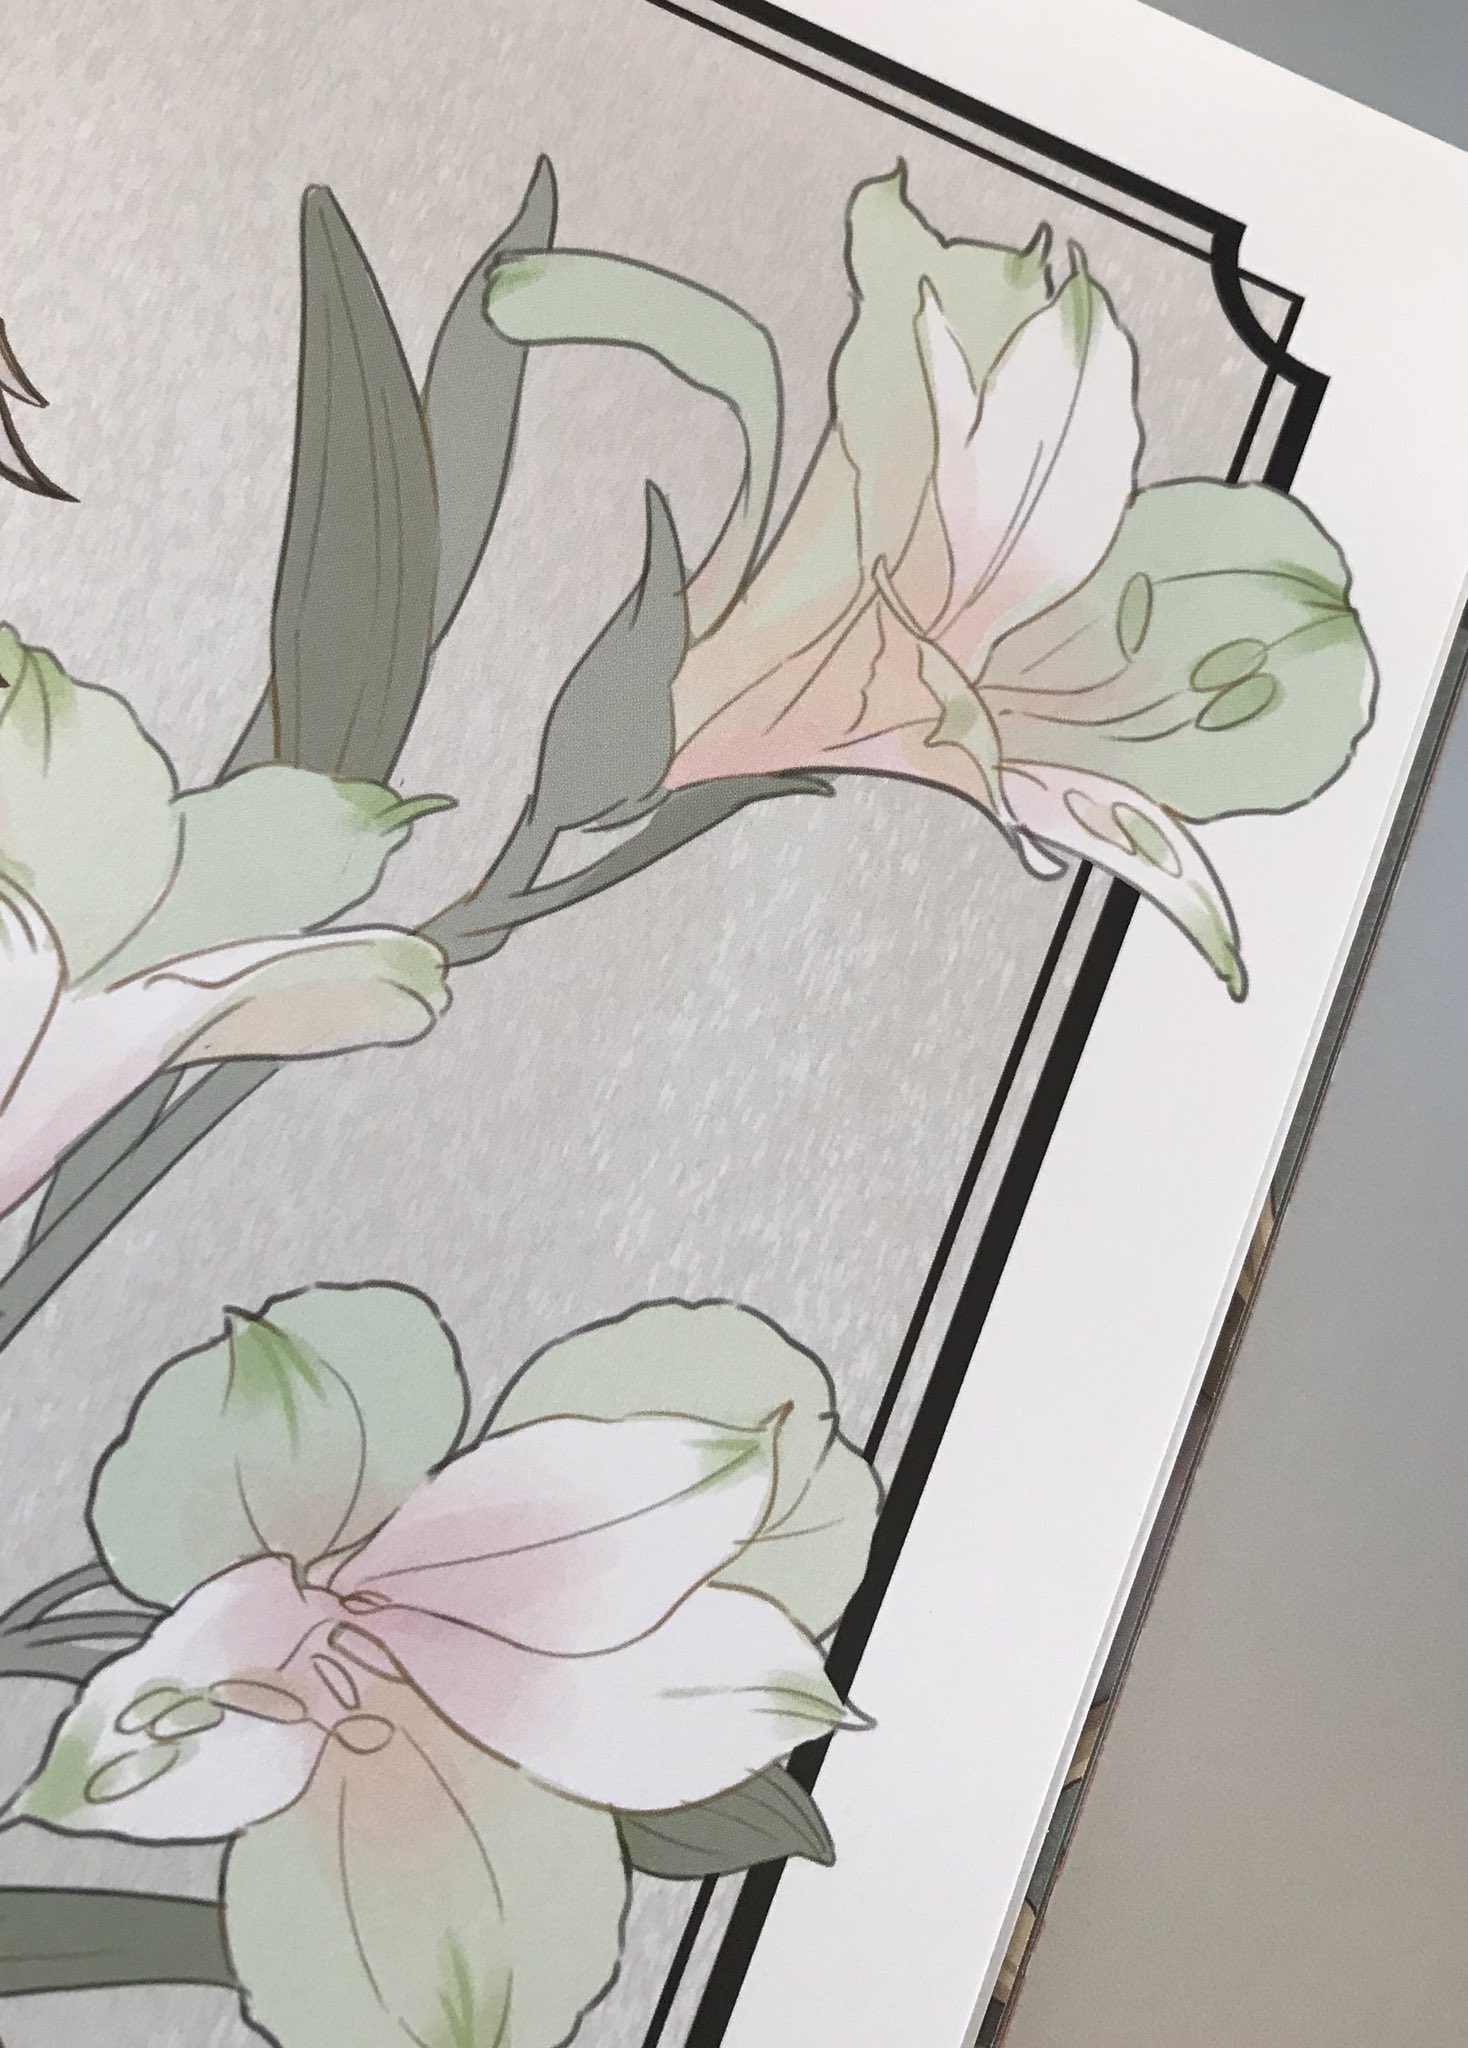 Kotona イラスト本の花は白のアルストロメリアとルドベキアです T Co Flvmqtmy9d Twitter